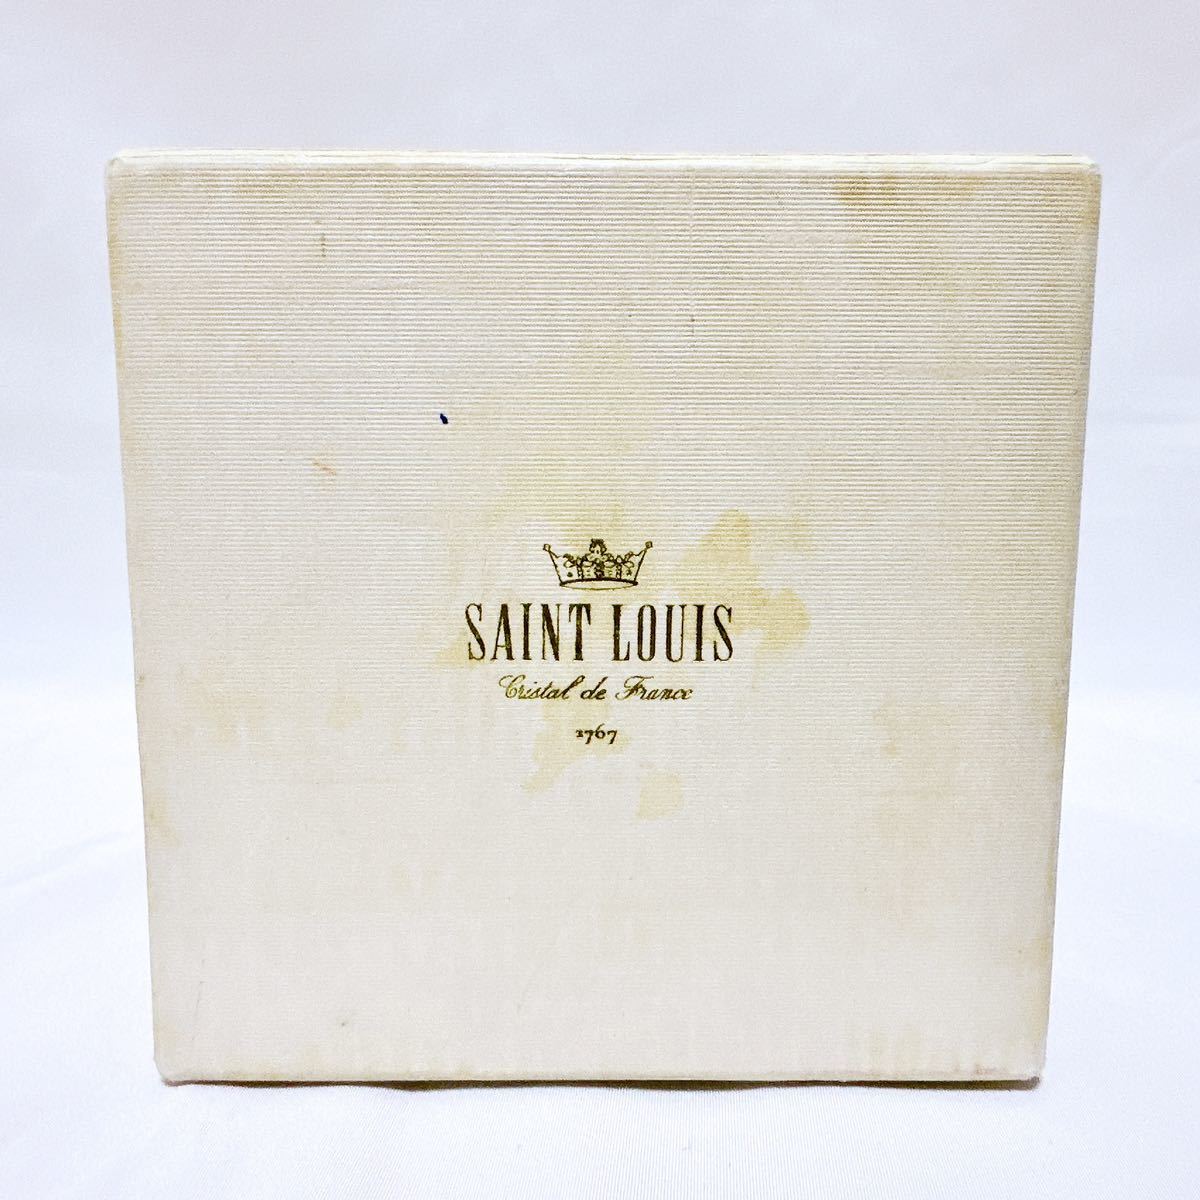 [ ограничение 1150 шт ] редкость стекло пресс-папье солнечный Louis античный Mid-century HERMES SAINT ST. LOUIS 1977 год оригинальная коробка есть отправка в тот же день 